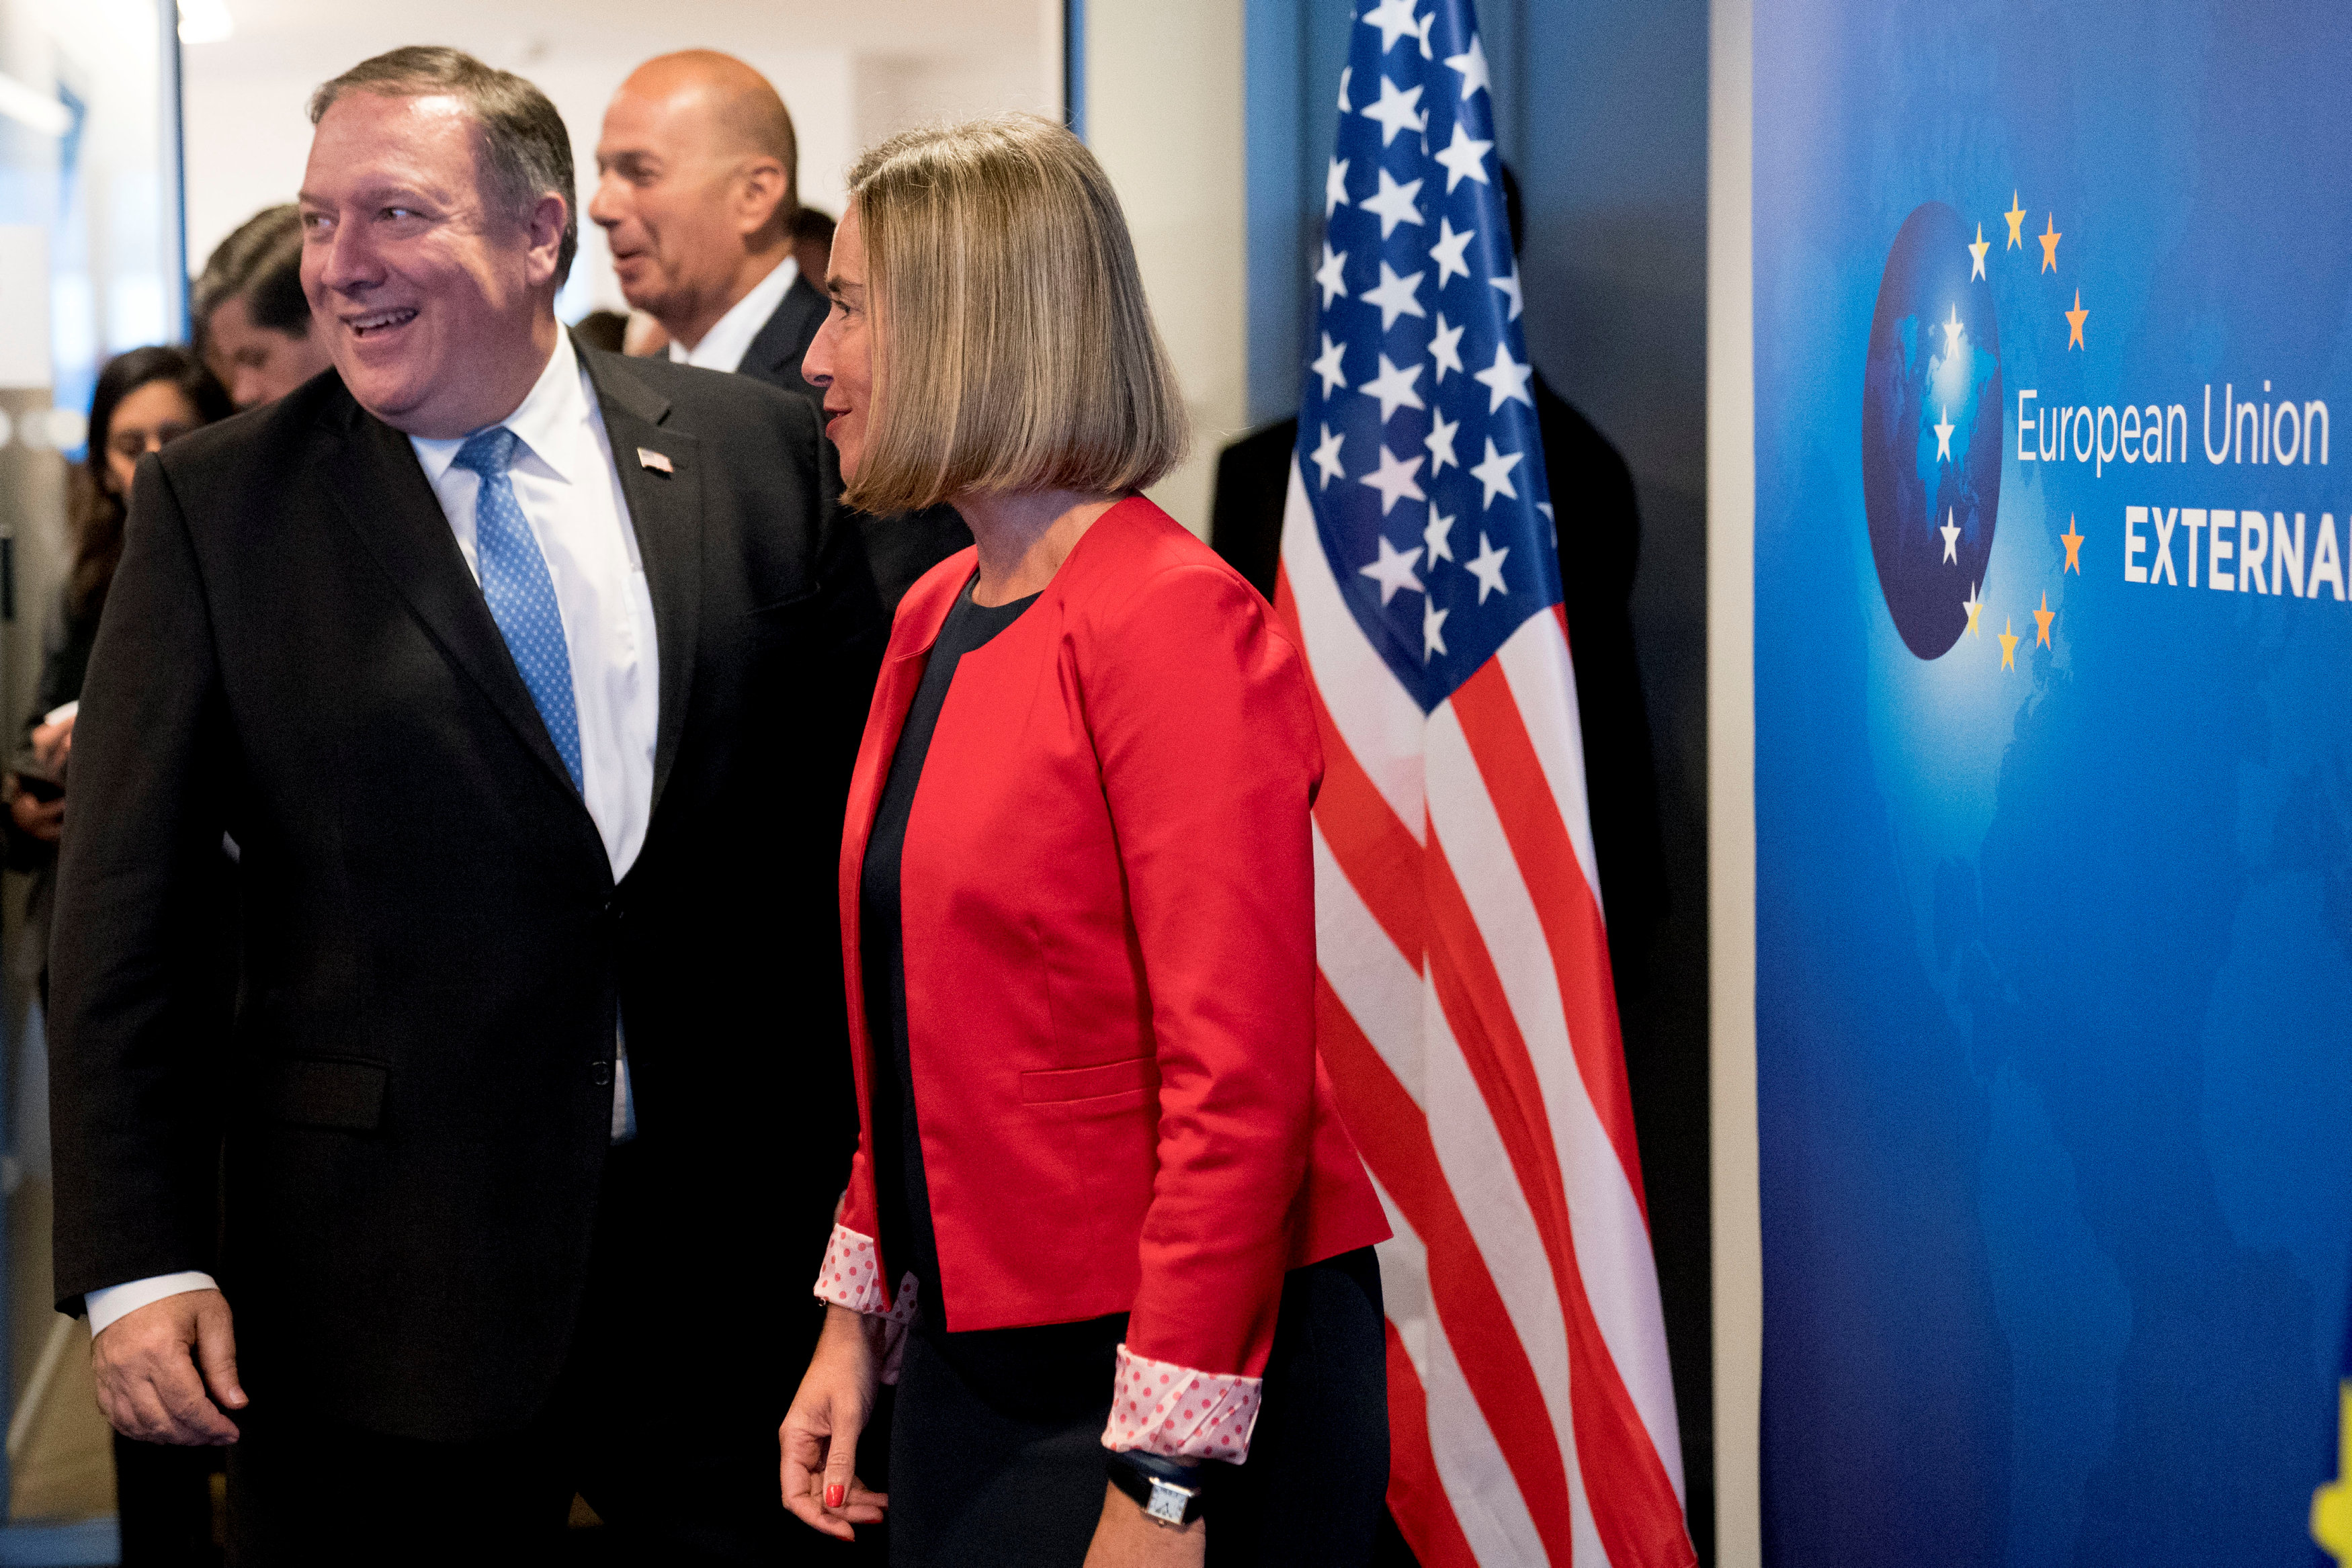 صورة أرشيفية لفريدريكا موغريني نائبة رئيس الاتحاد الأوروبي (يمين) ووزير الخارجية الأمريكي مارك بومبيو (يسار). رويترز 